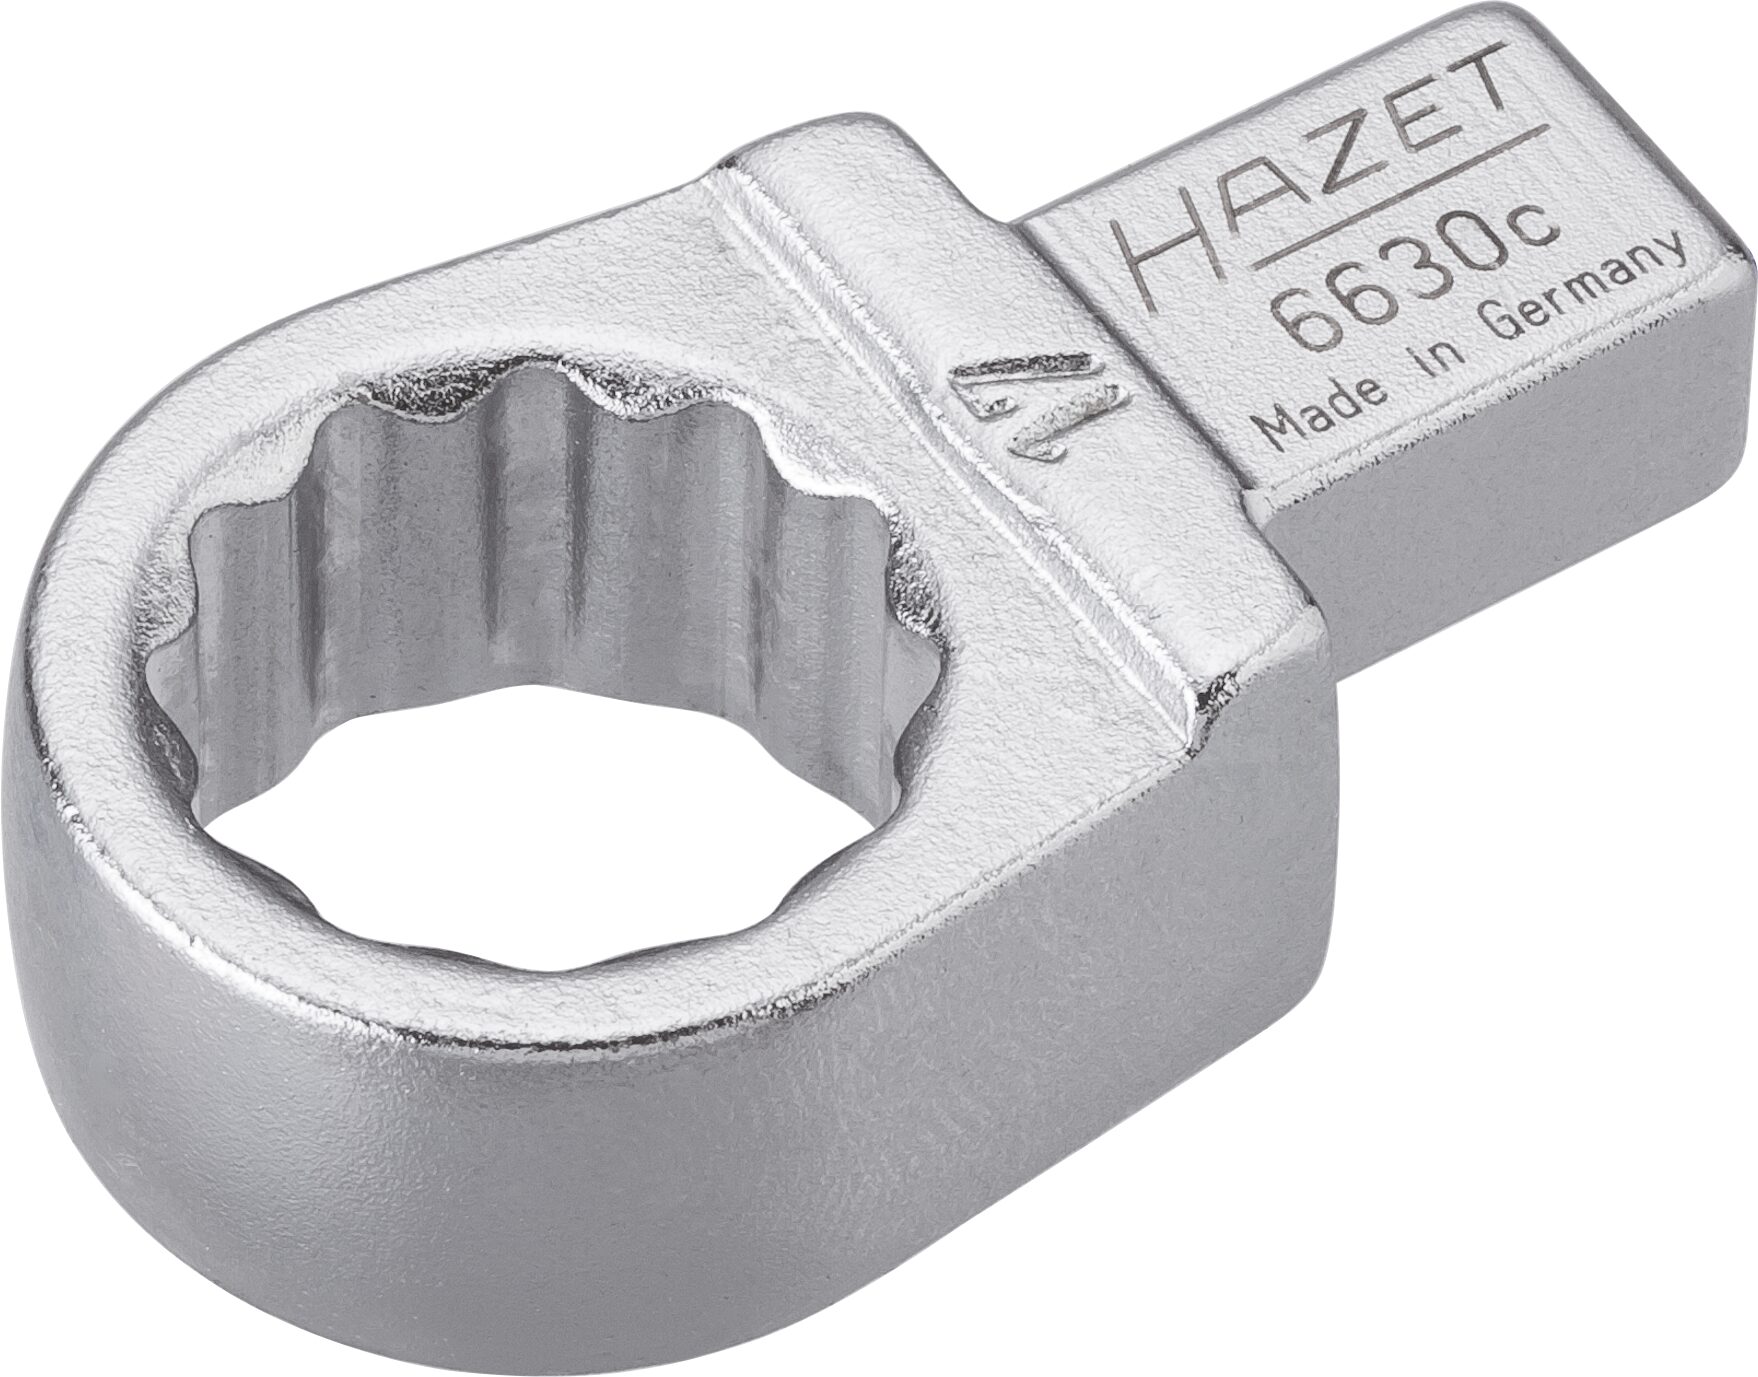 HAZET Einsteck-Ringschlüssel 6630C-17 · Einsteck-Vierkant 9 x 12 mm · Außen Doppel-Sechskant-Tractionsprofil · 17 mm